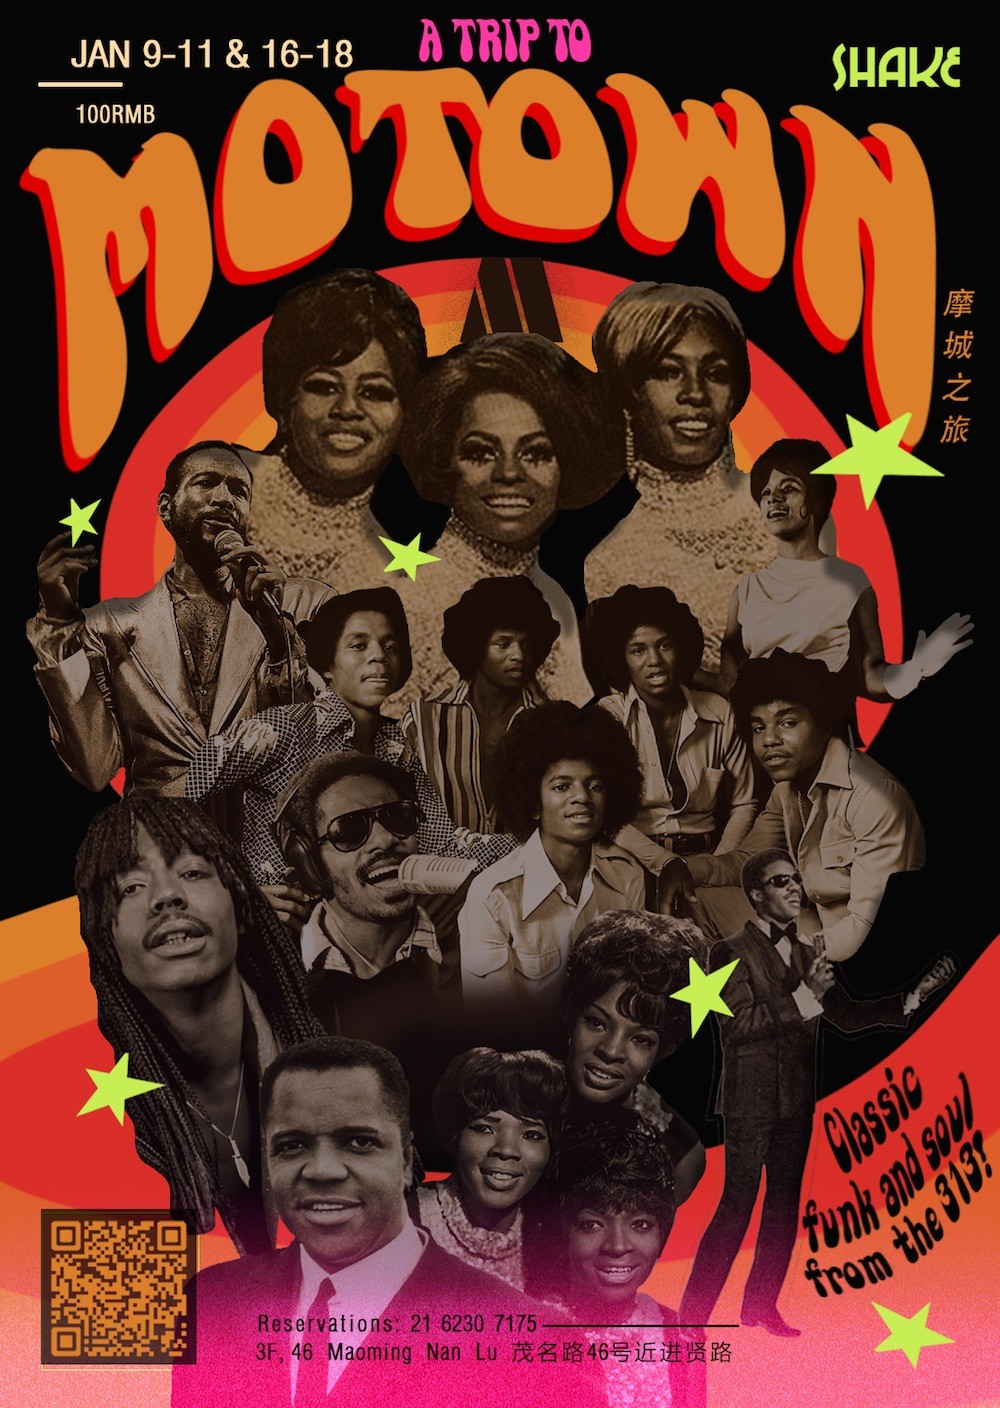 A-Trip-To-Motown-copy.jpg